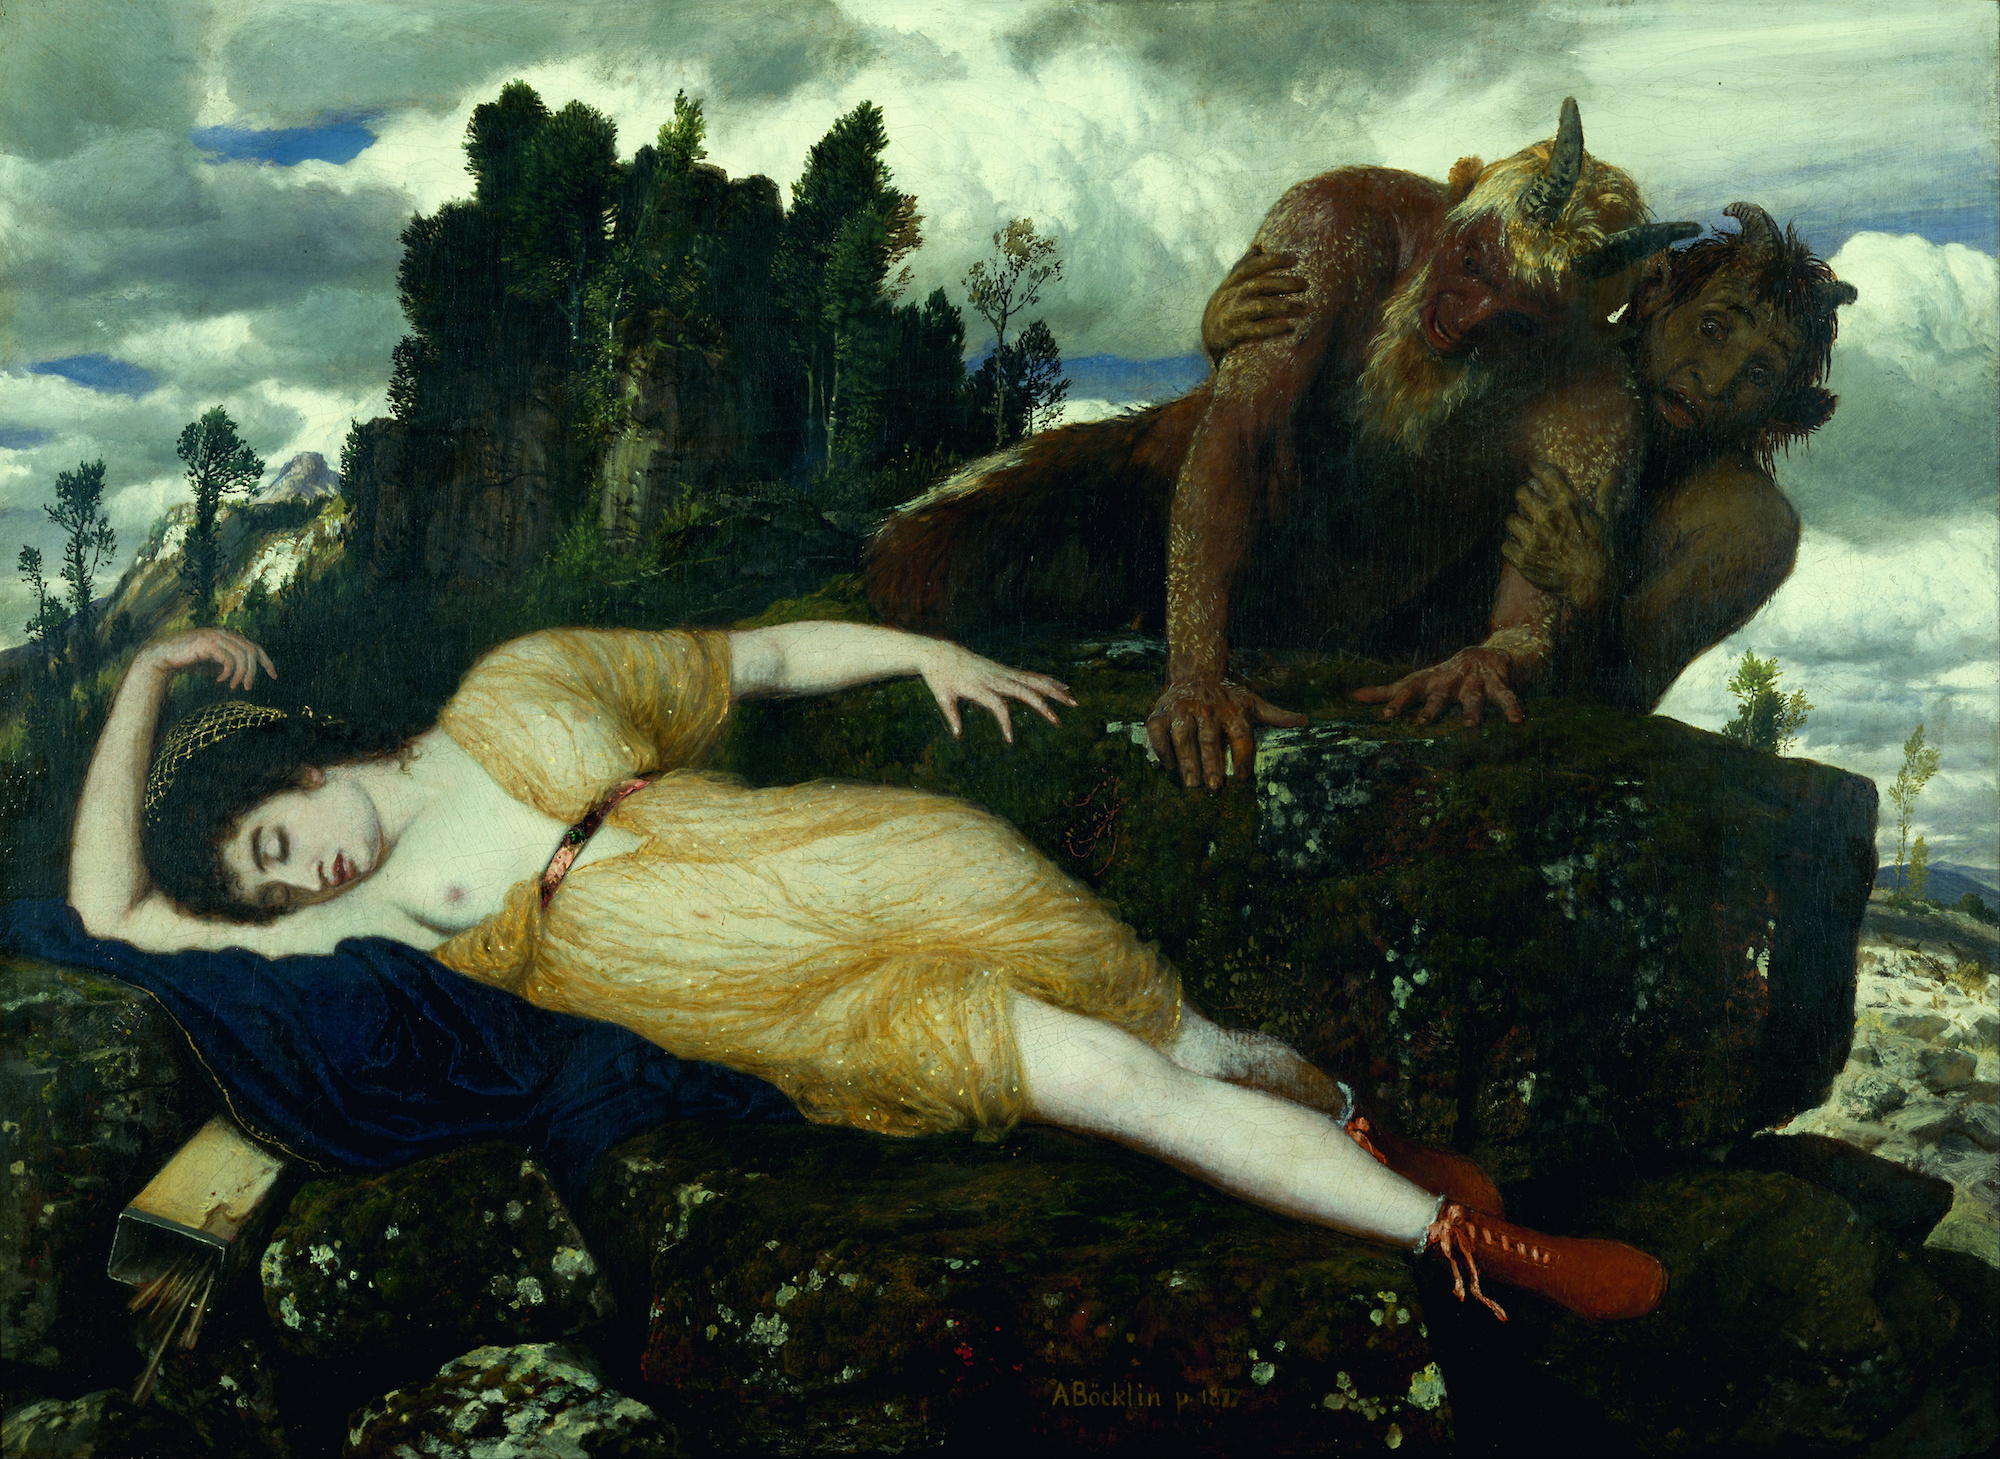 De Slapende Diana Bekeken door Twee Faunen by Arnold Böcklin - 1877 - 105 x 77.4 cm Museum Kunstpalast